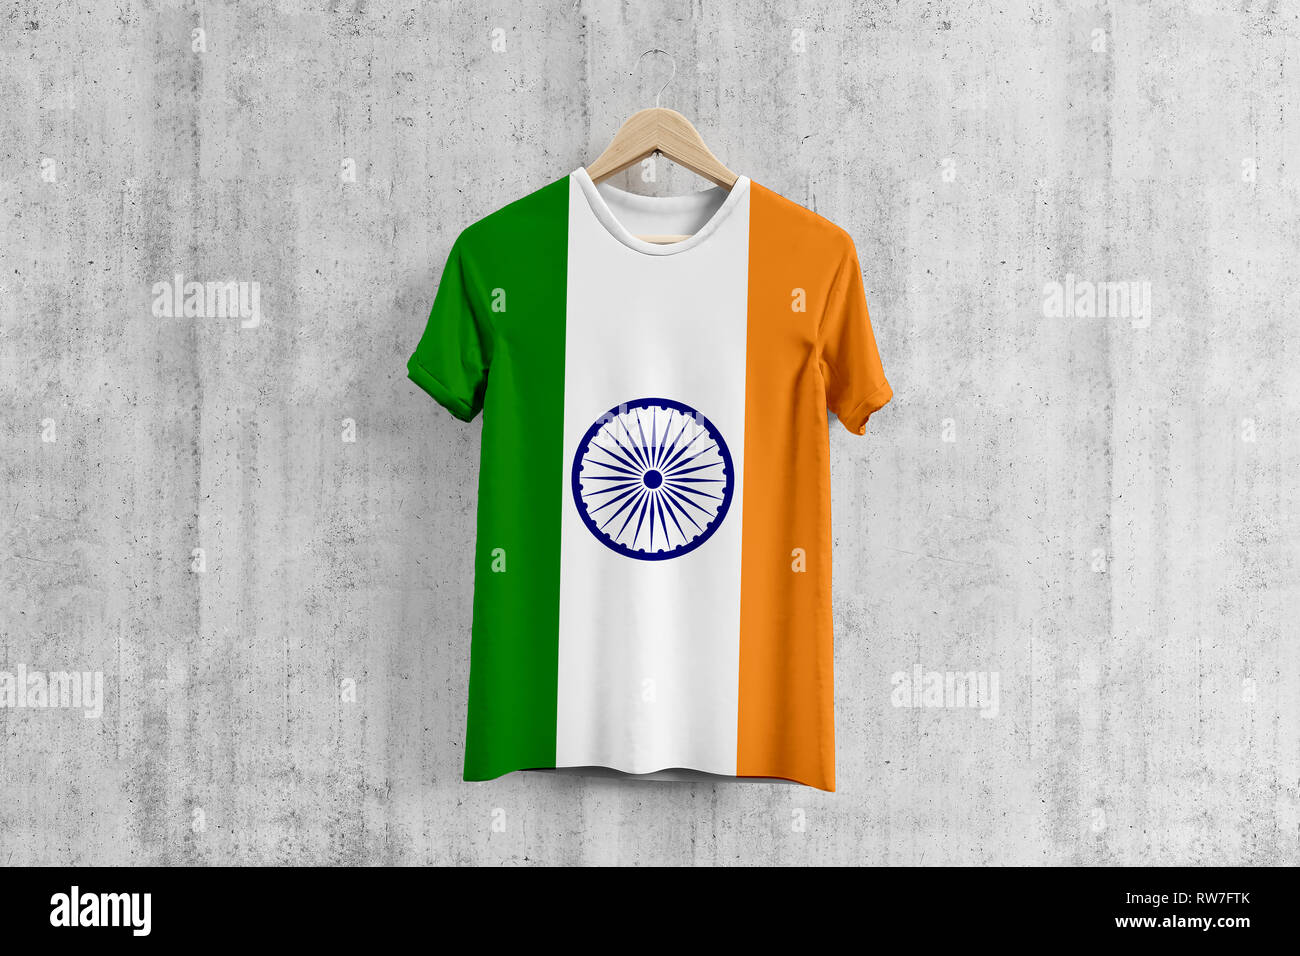 indian flag shirt